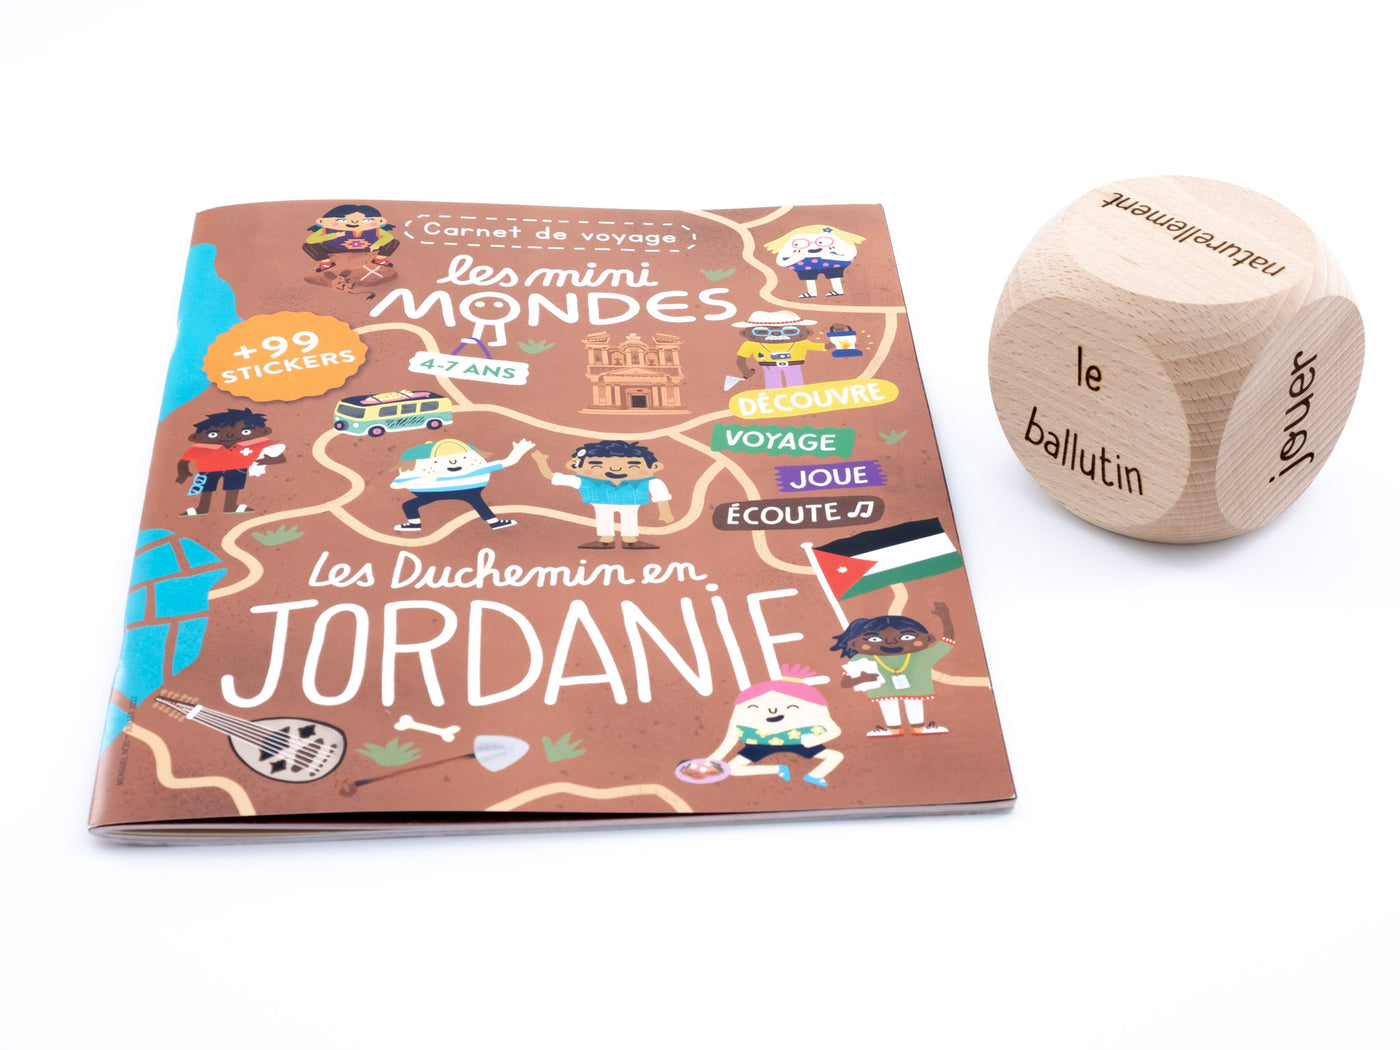 Carnet de voyage Jordanie 4-7 ans